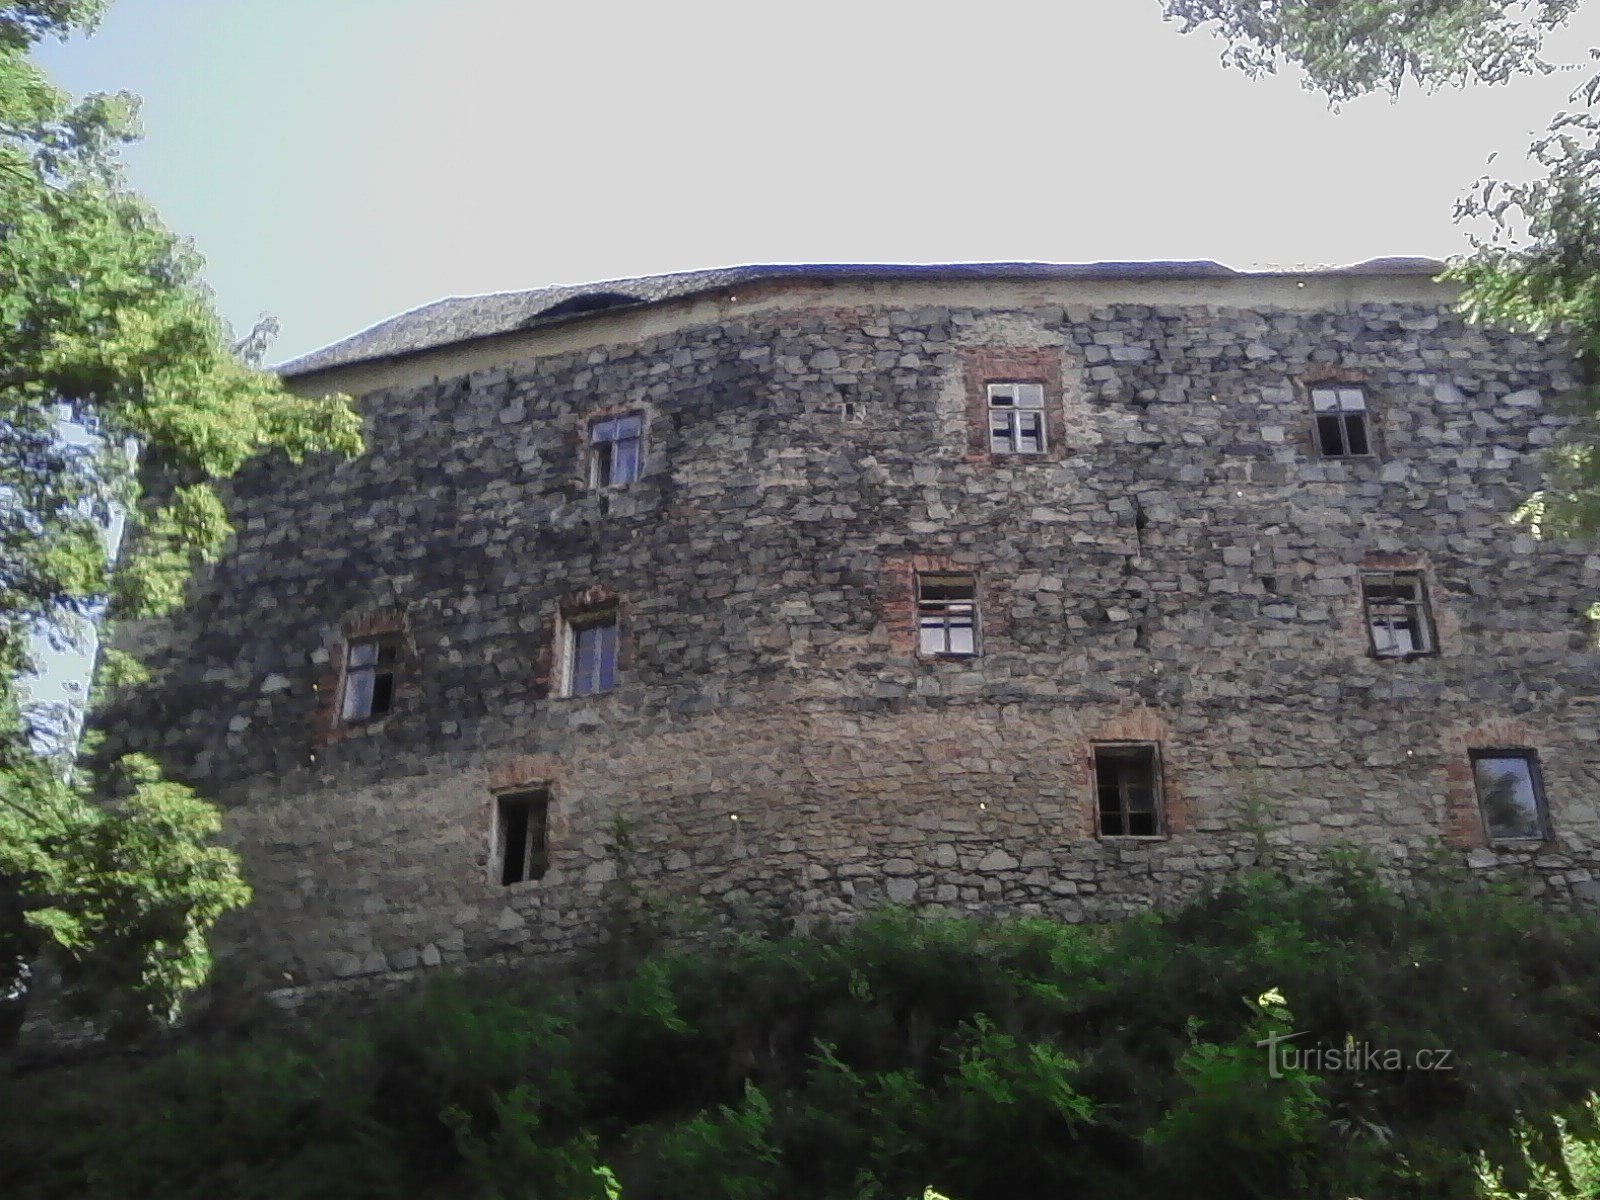 1. 云堡垒。 14 世纪的中世纪堡垒。 有宫殿防御工事，它矗立在一座小山上